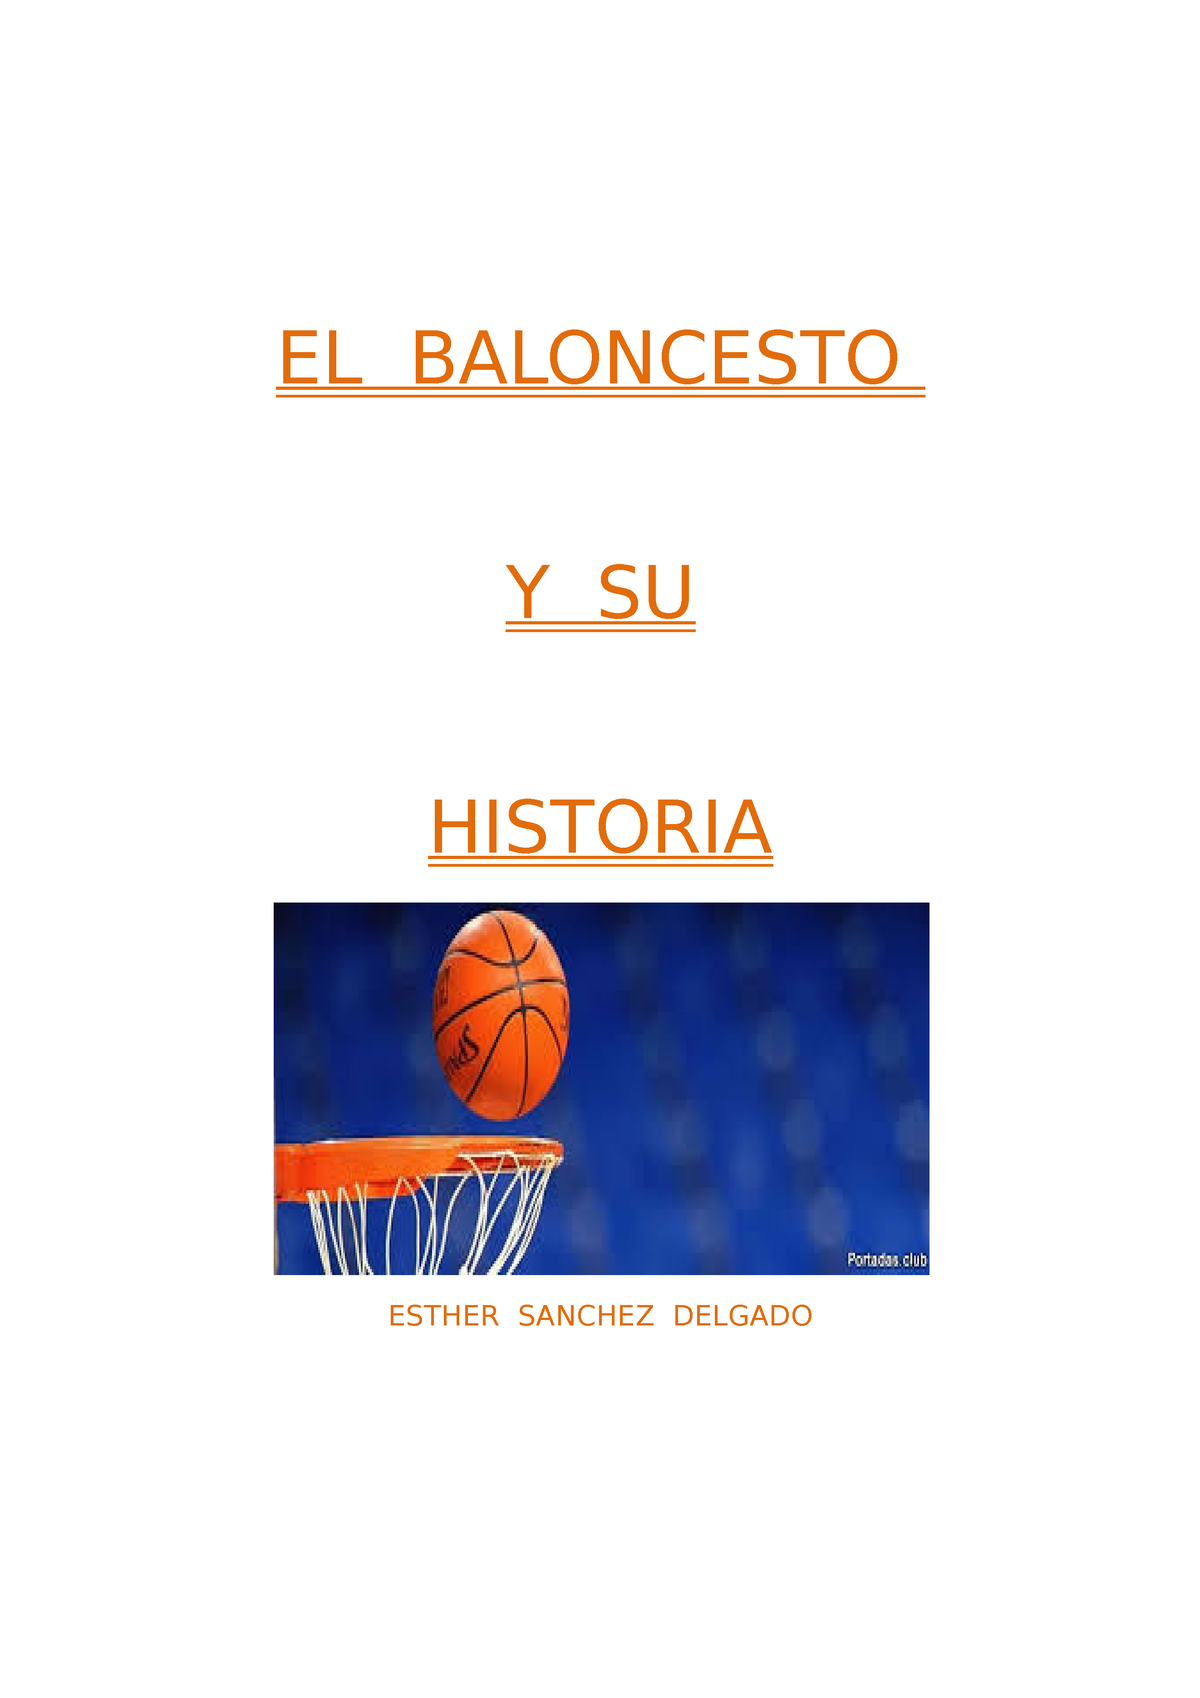 Baloncesto El Baloncesto Y Su Historia Esther Sanchez Delgado La Historia Del Baloncesto El 8761